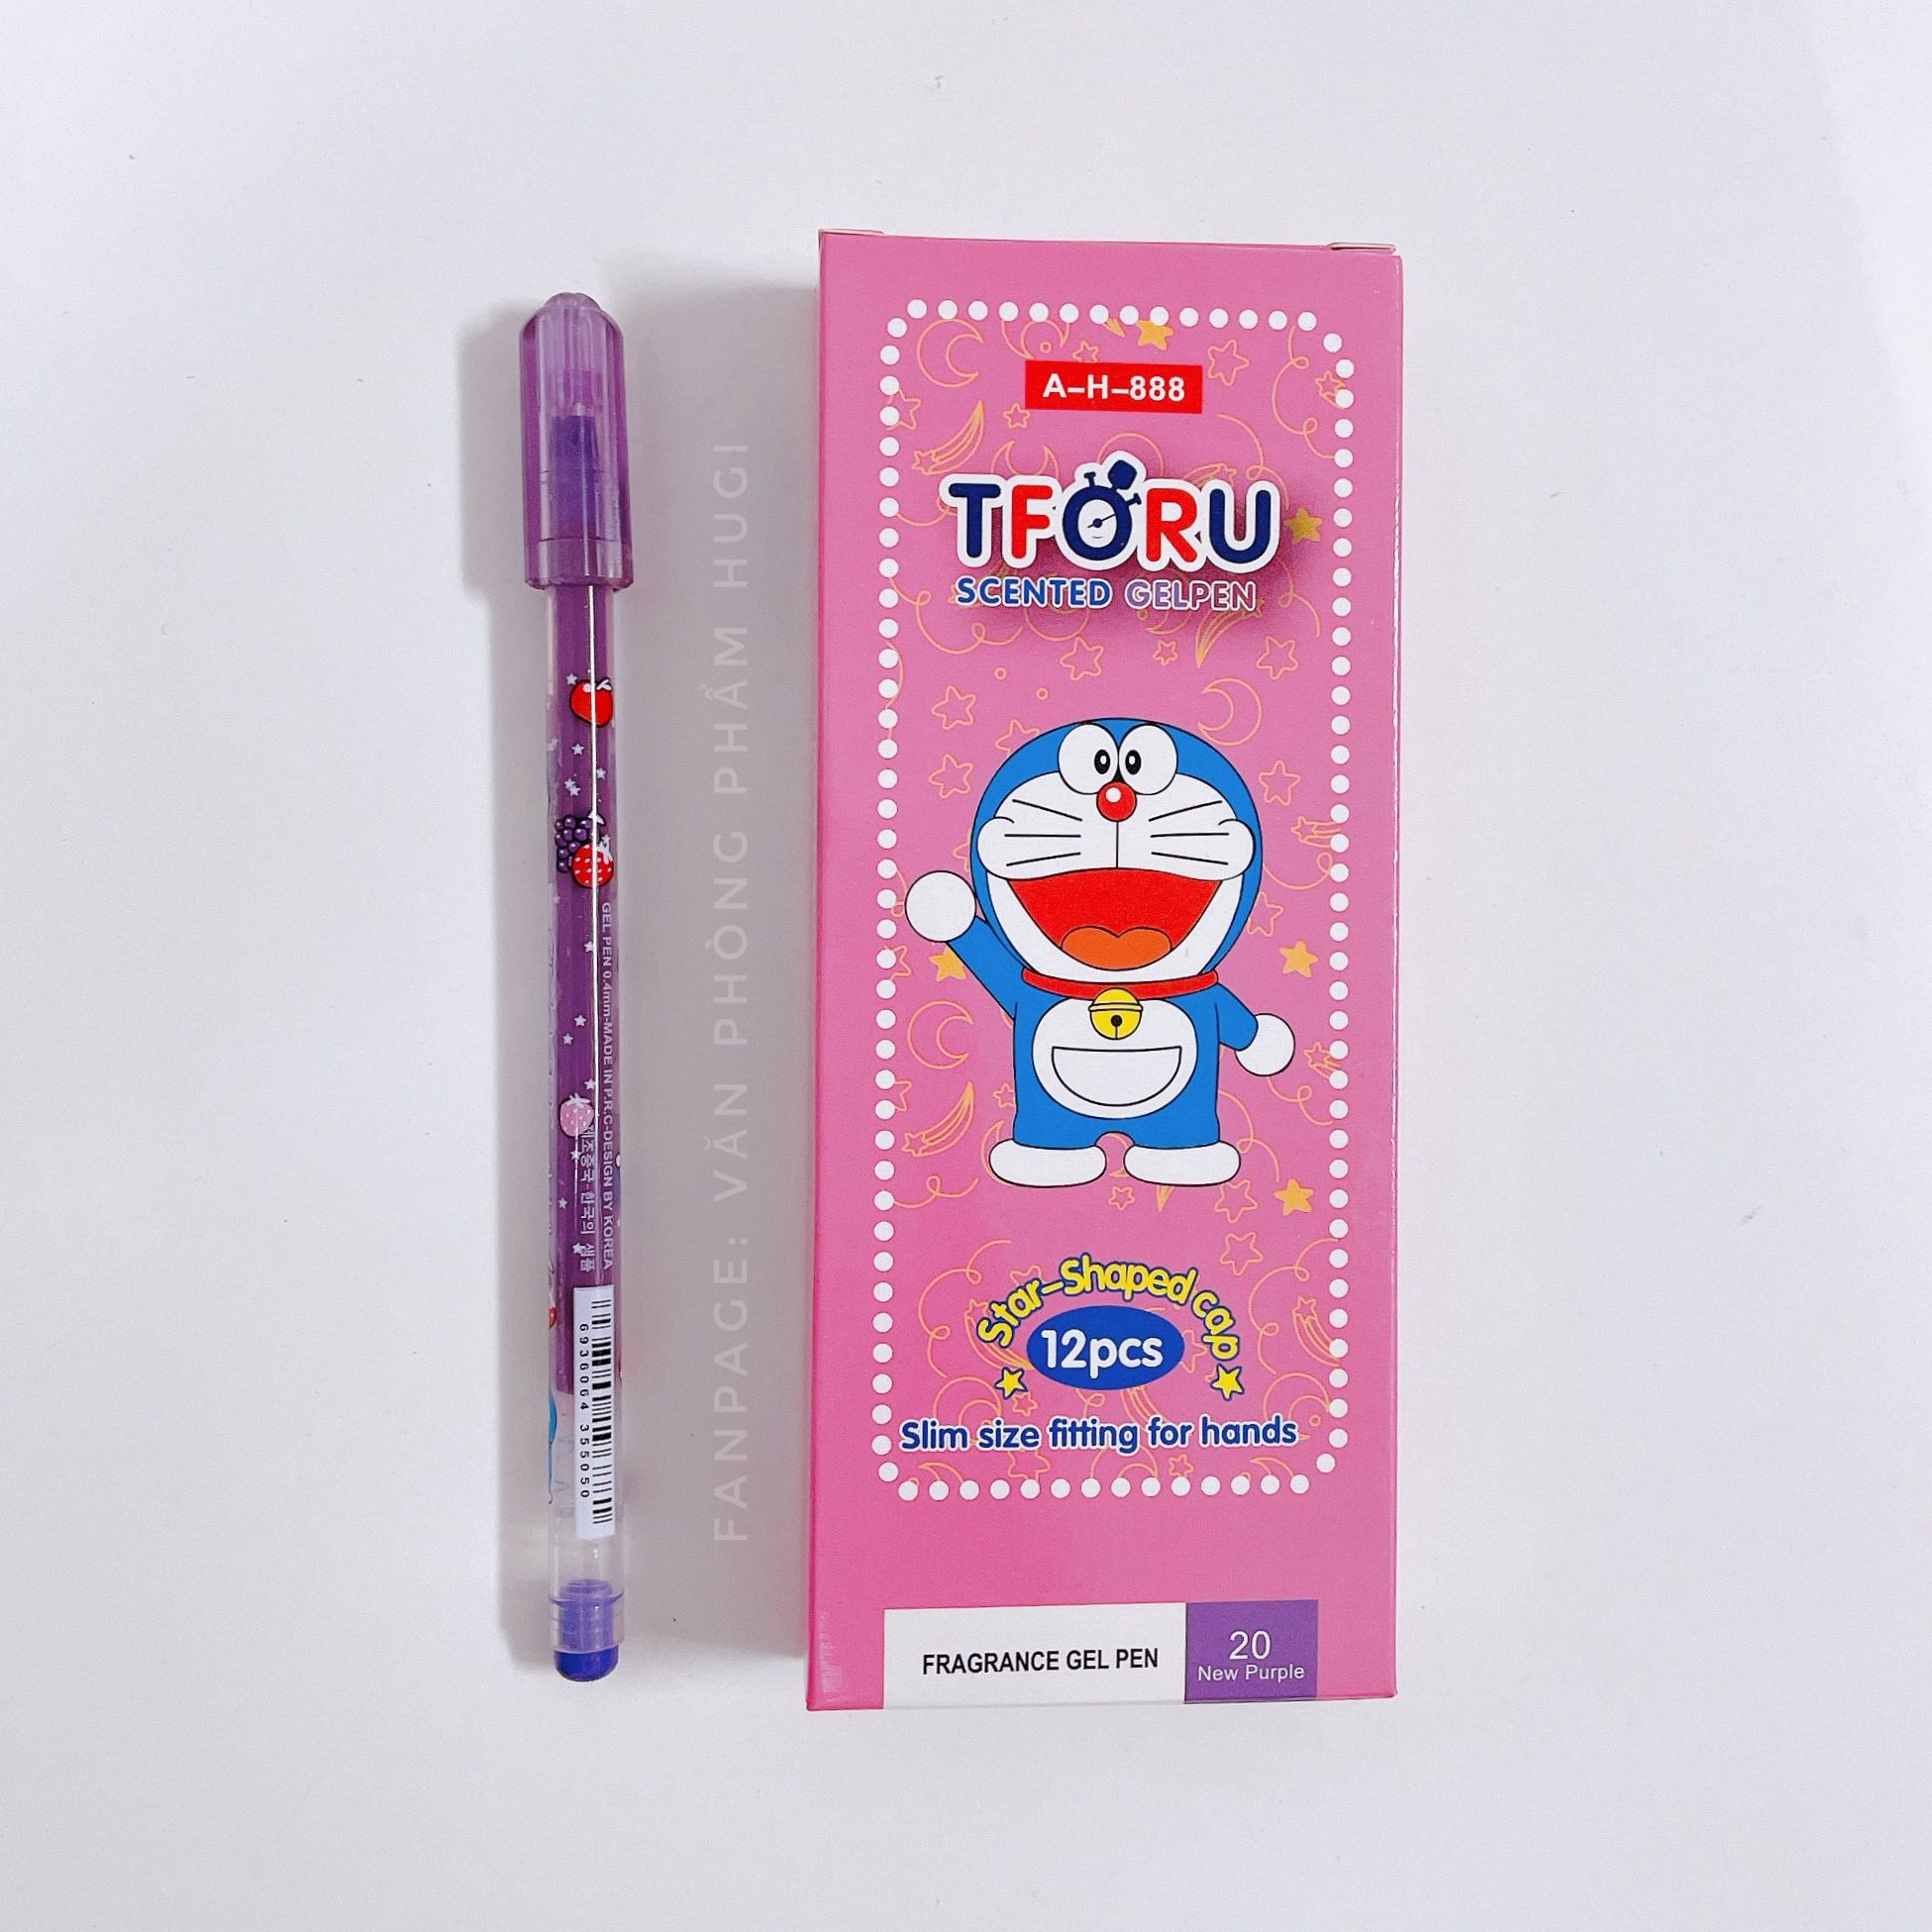 Hộp 12 Cây Bút Gel Nho TTORU chính hãng D.A P&T (Made in Korea) nét nhỏ mực đậm dành cho các bé tiểu học